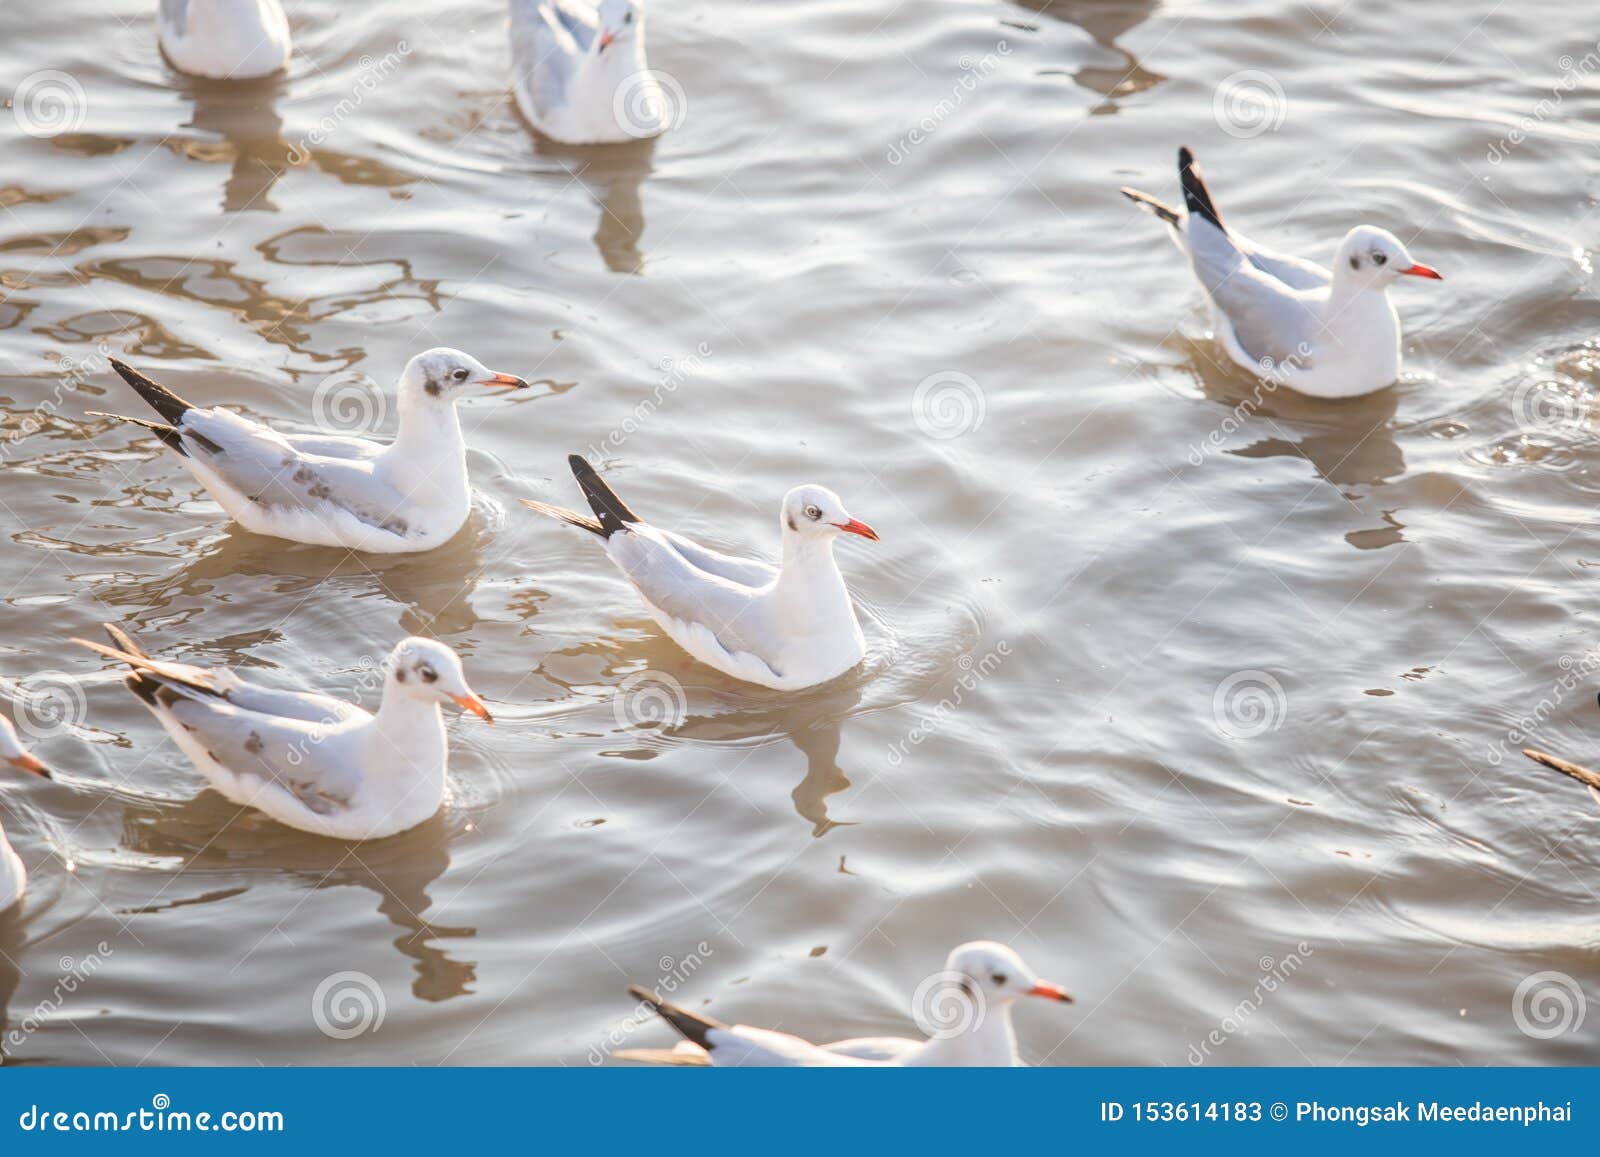 group of seagull bird swimming on sea at bang poo, samutprakan, thailand.